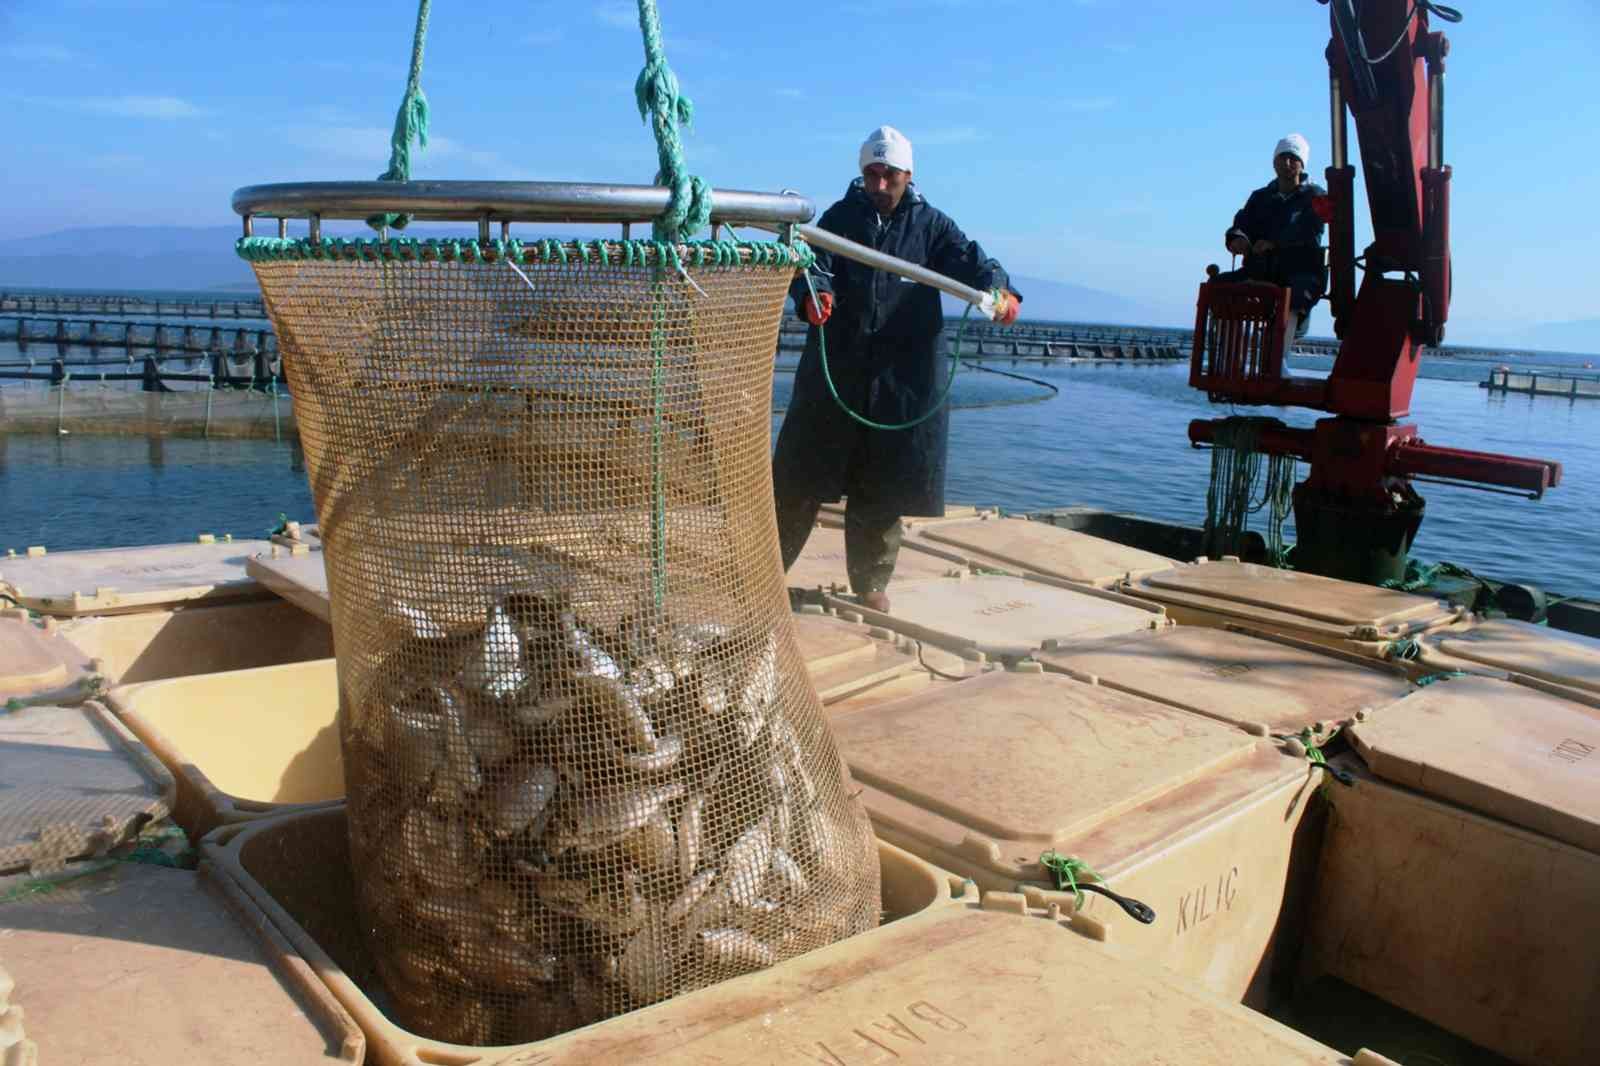 Muğla’dan 54 ülkeye 453 milyon dolarlık balık ihracatı #mugla